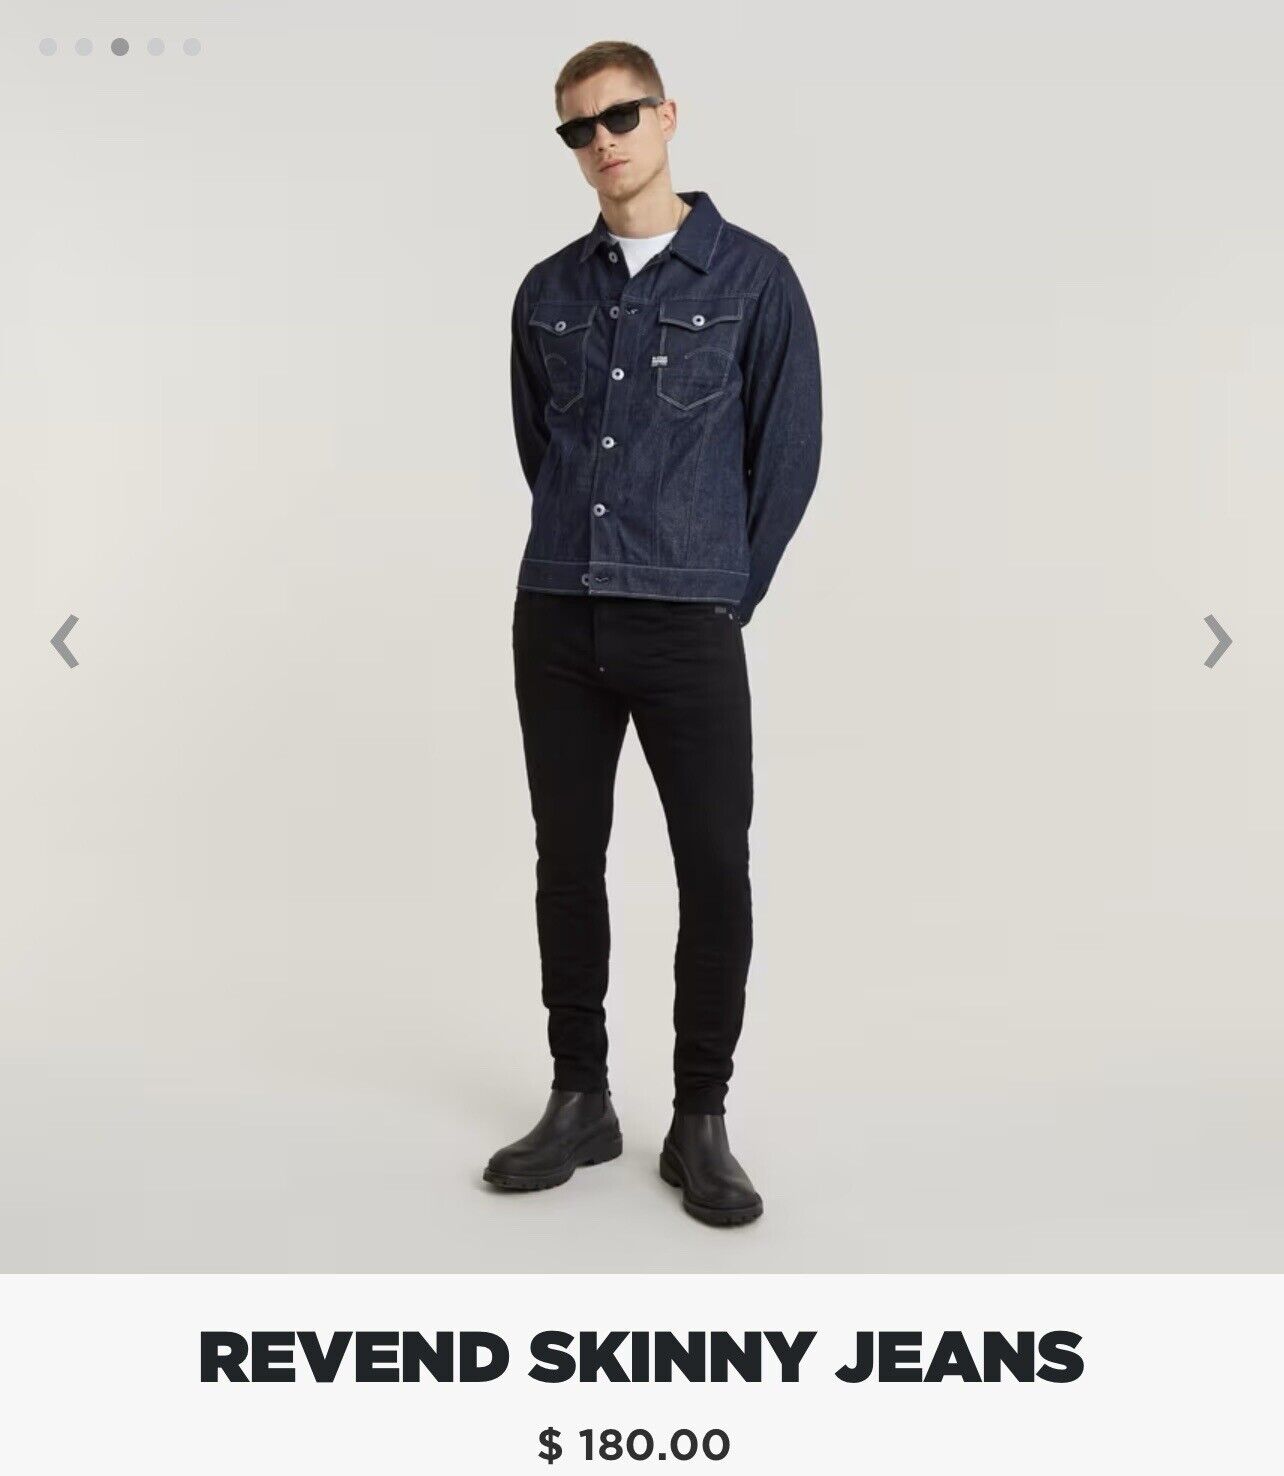 G-STAR RAW Revend Skinny Jeans, Men’s, Size 38W/36L, Black, Stretchy ...